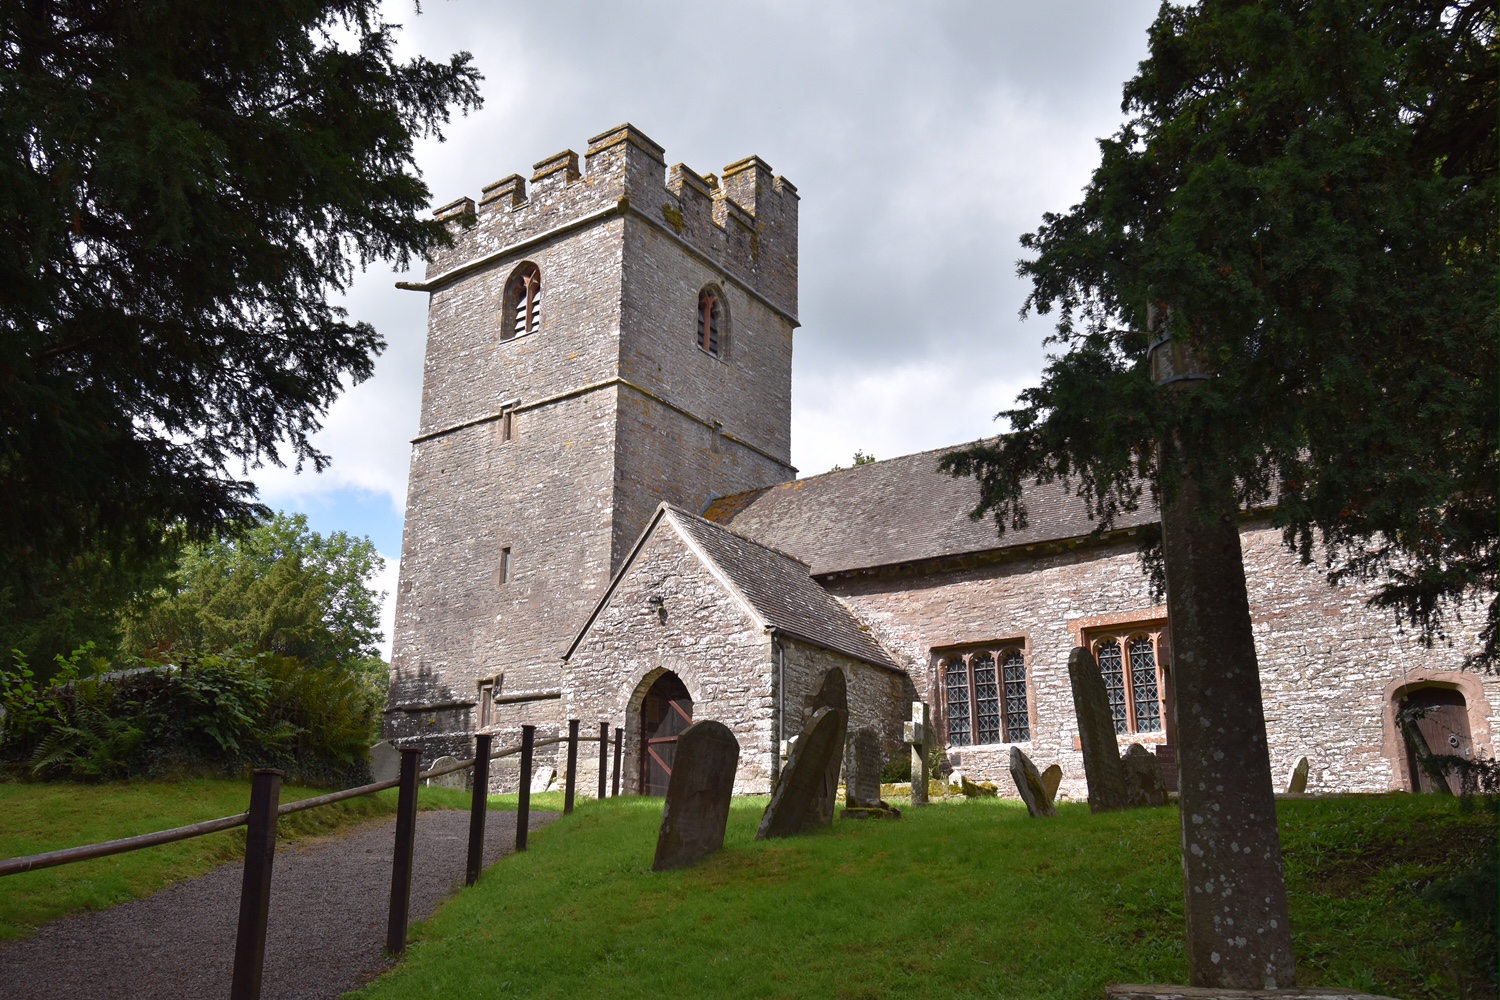 Llanfeugan church